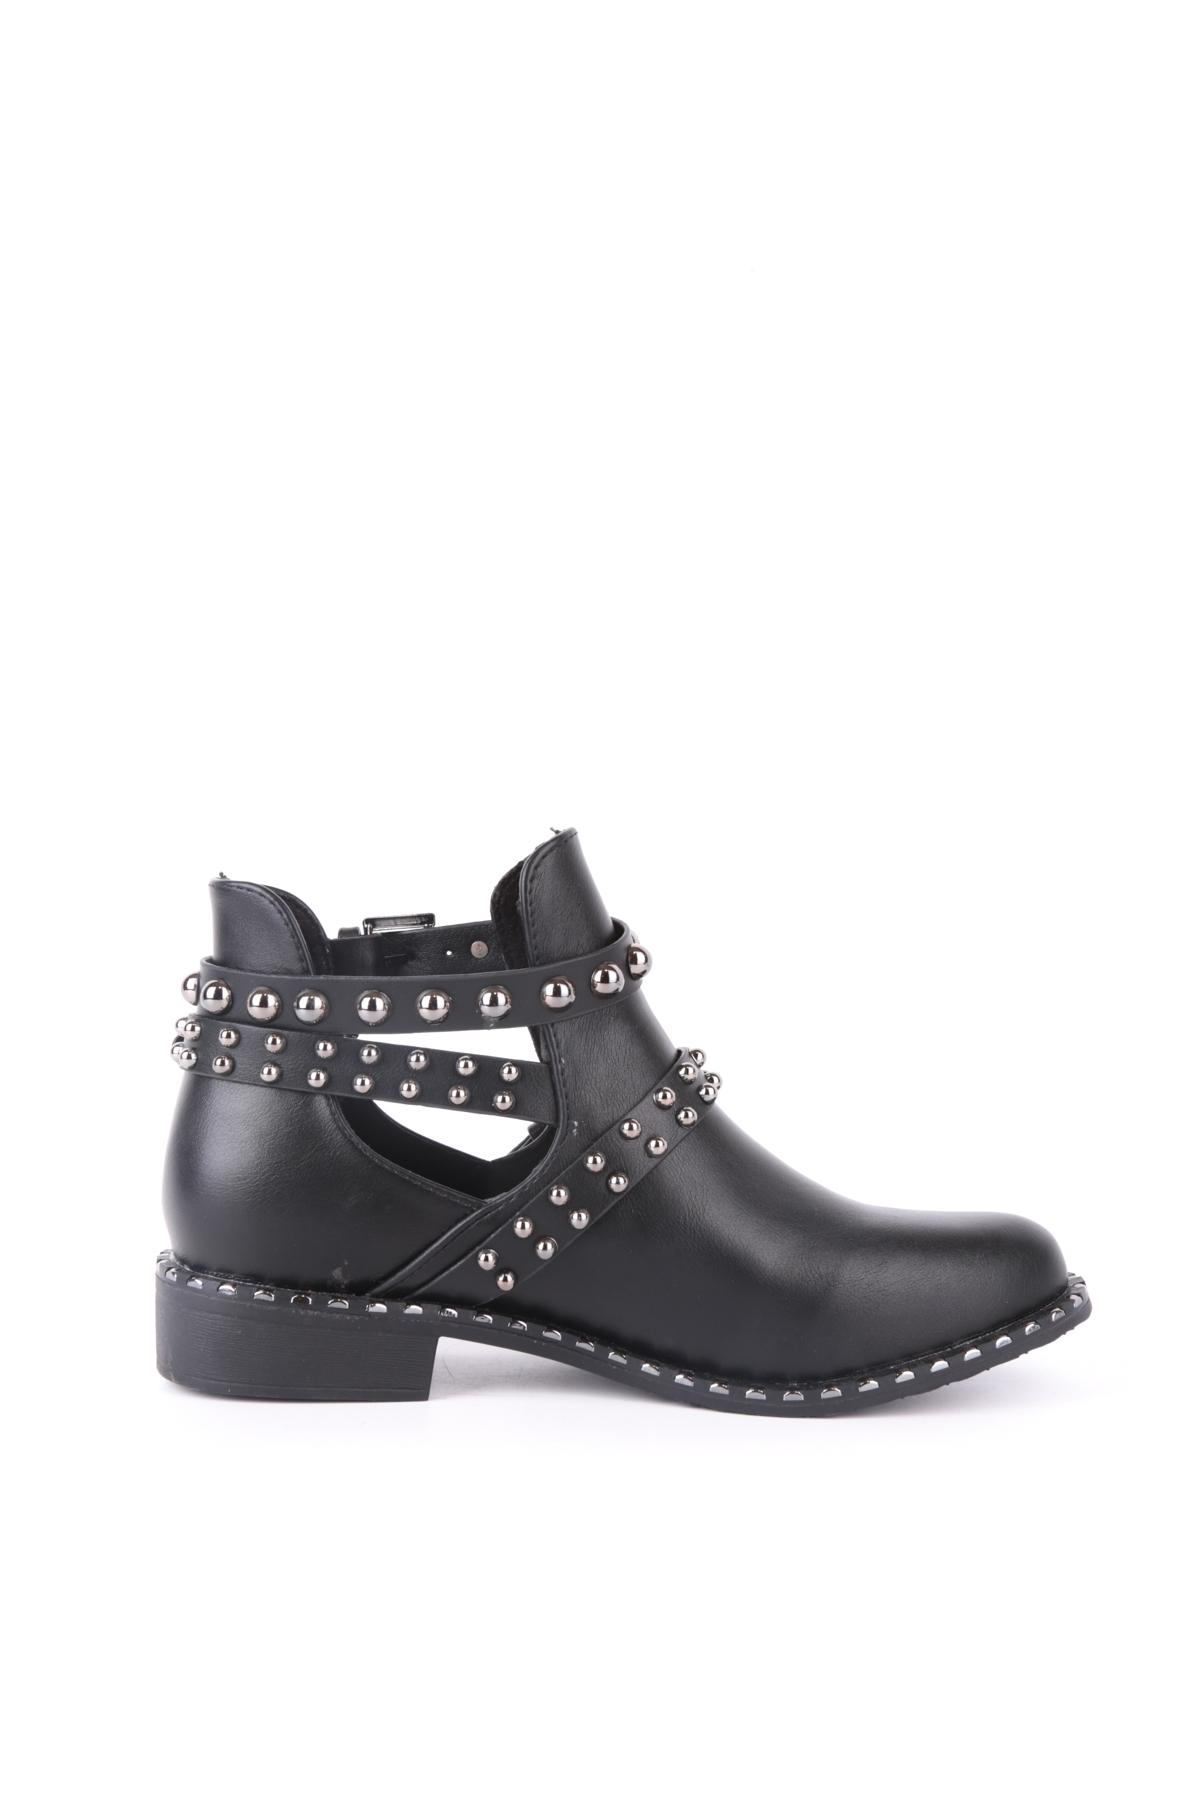 Botines Zapatos Black BELLE SHOES 6078 #c Efashion Paris